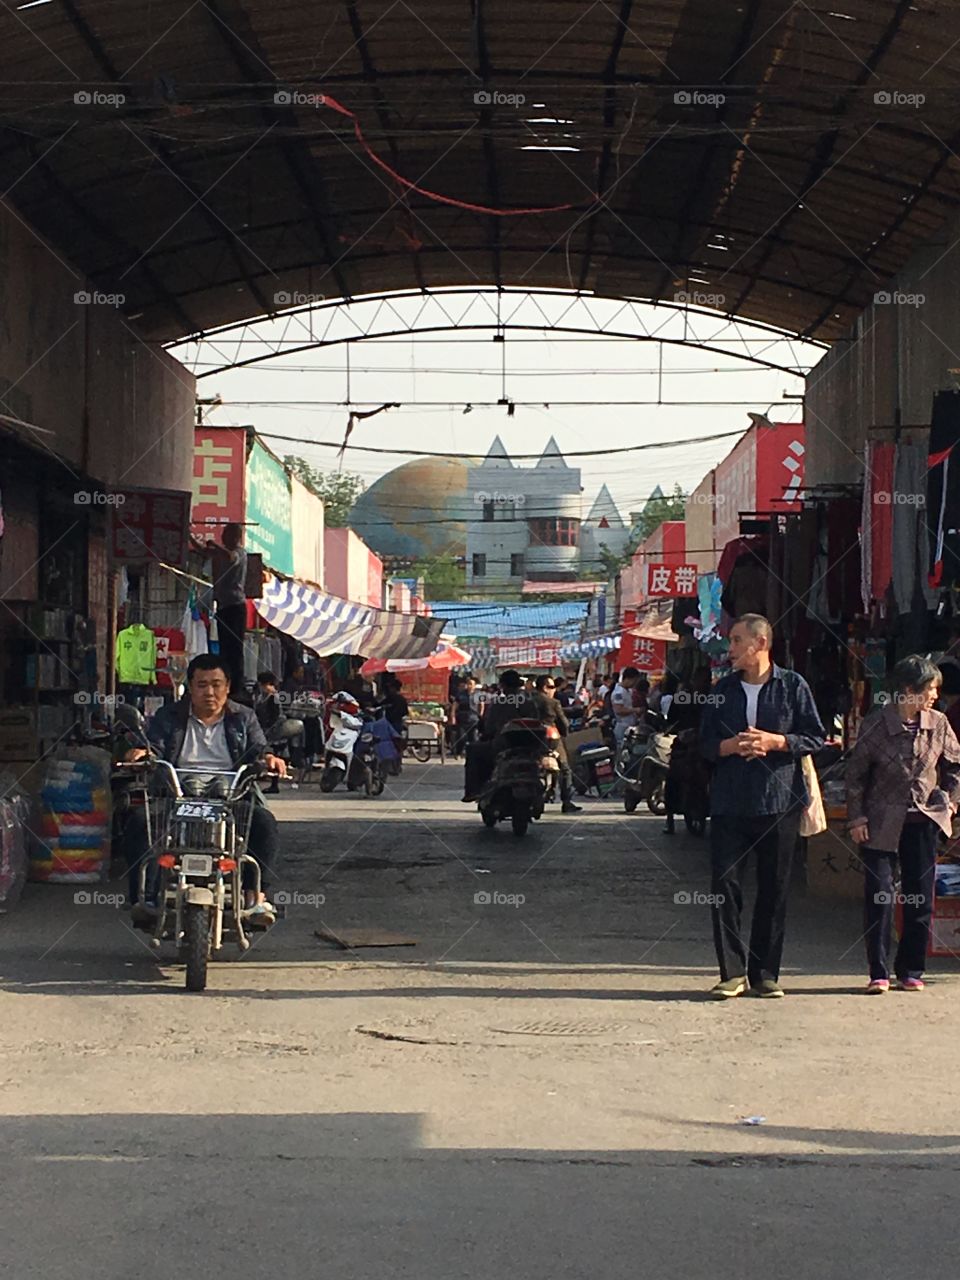 Entrance to a market in Zhengzhou, China